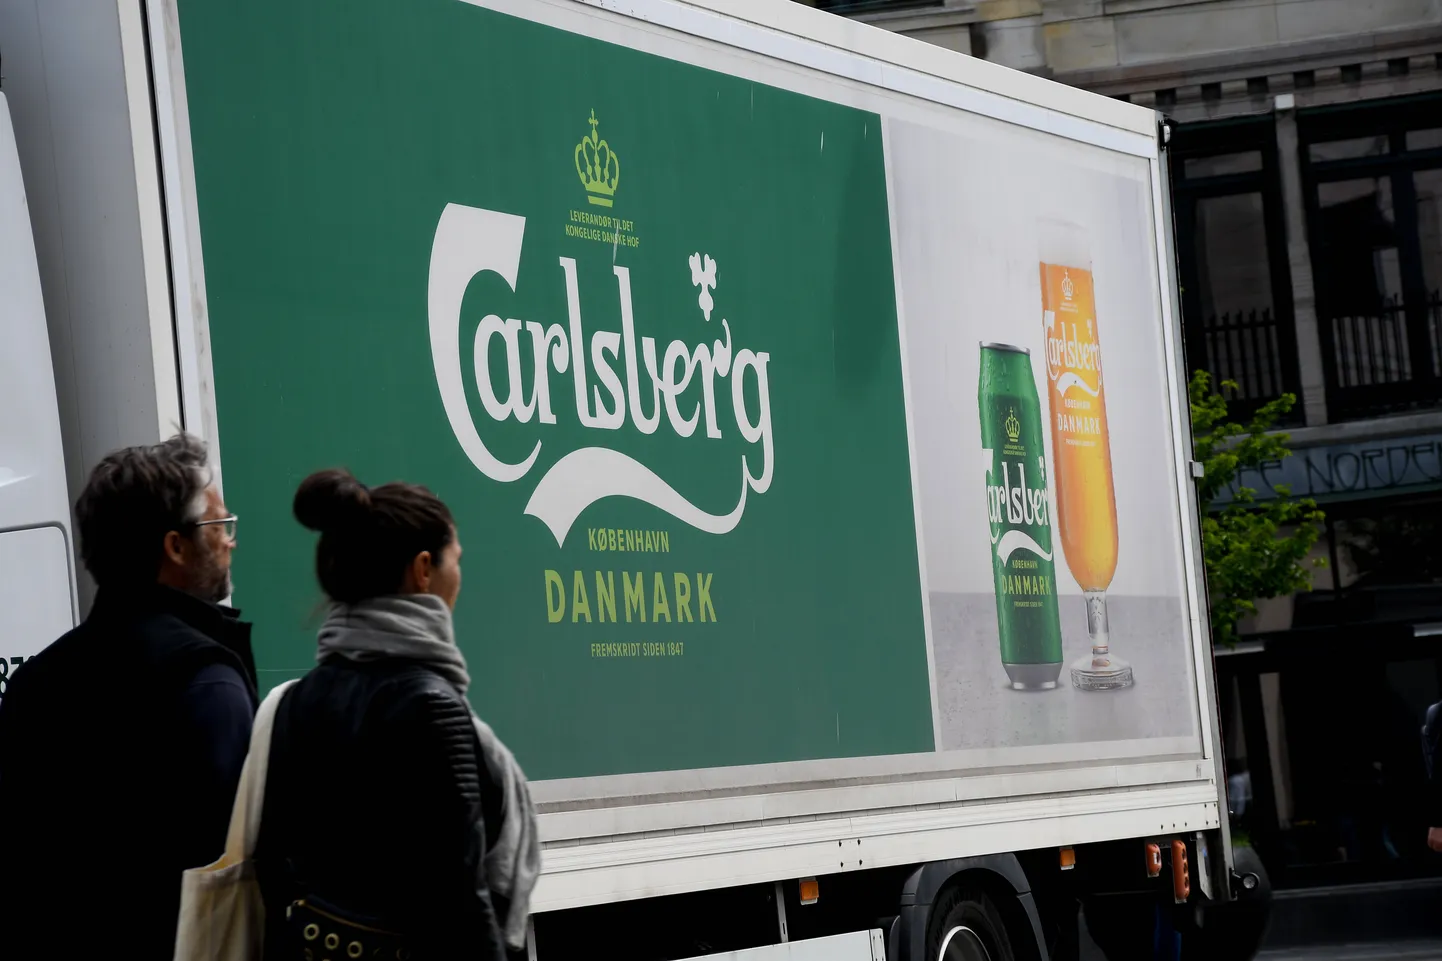 Реклама пива Carlsberg в Копенгагене.